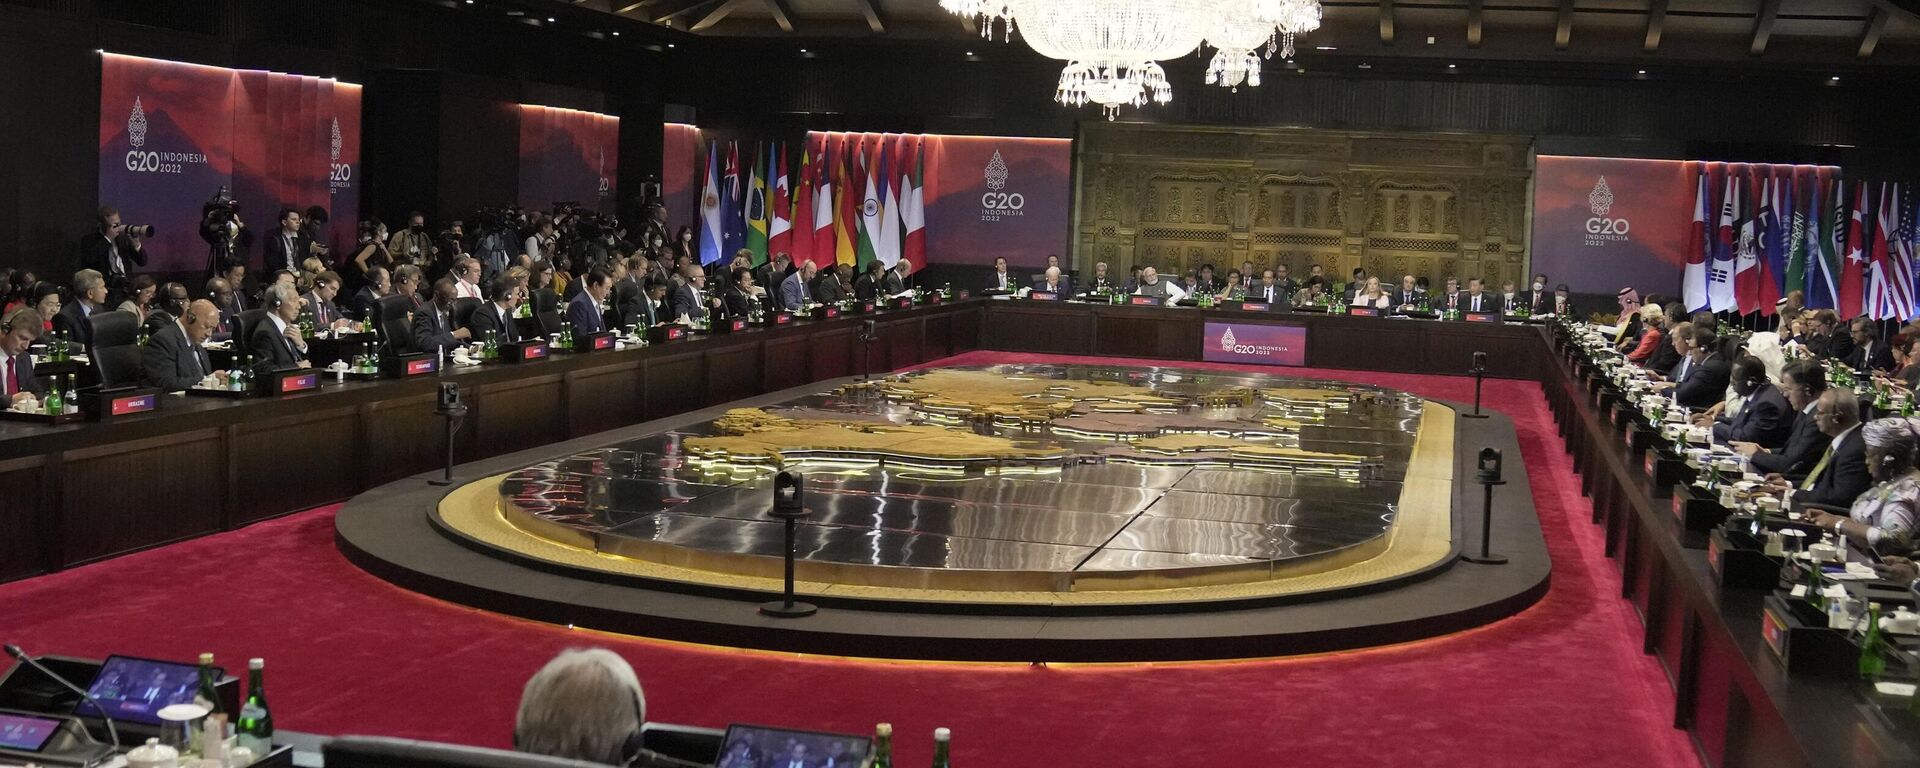 Endonezya Devlet Başkanı Joko Widodo, G20 liderler zirvesinde yaptığı açılış konuşmasında savaş konusundaki fikir ayrılıklarına rağmen küresel ekonomiyi düzeltmek için dünya liderlerine birlikte somut adımlar atılması çağrısında bulundu. - Sputnik Türkiye, 1920, 15.11.2022